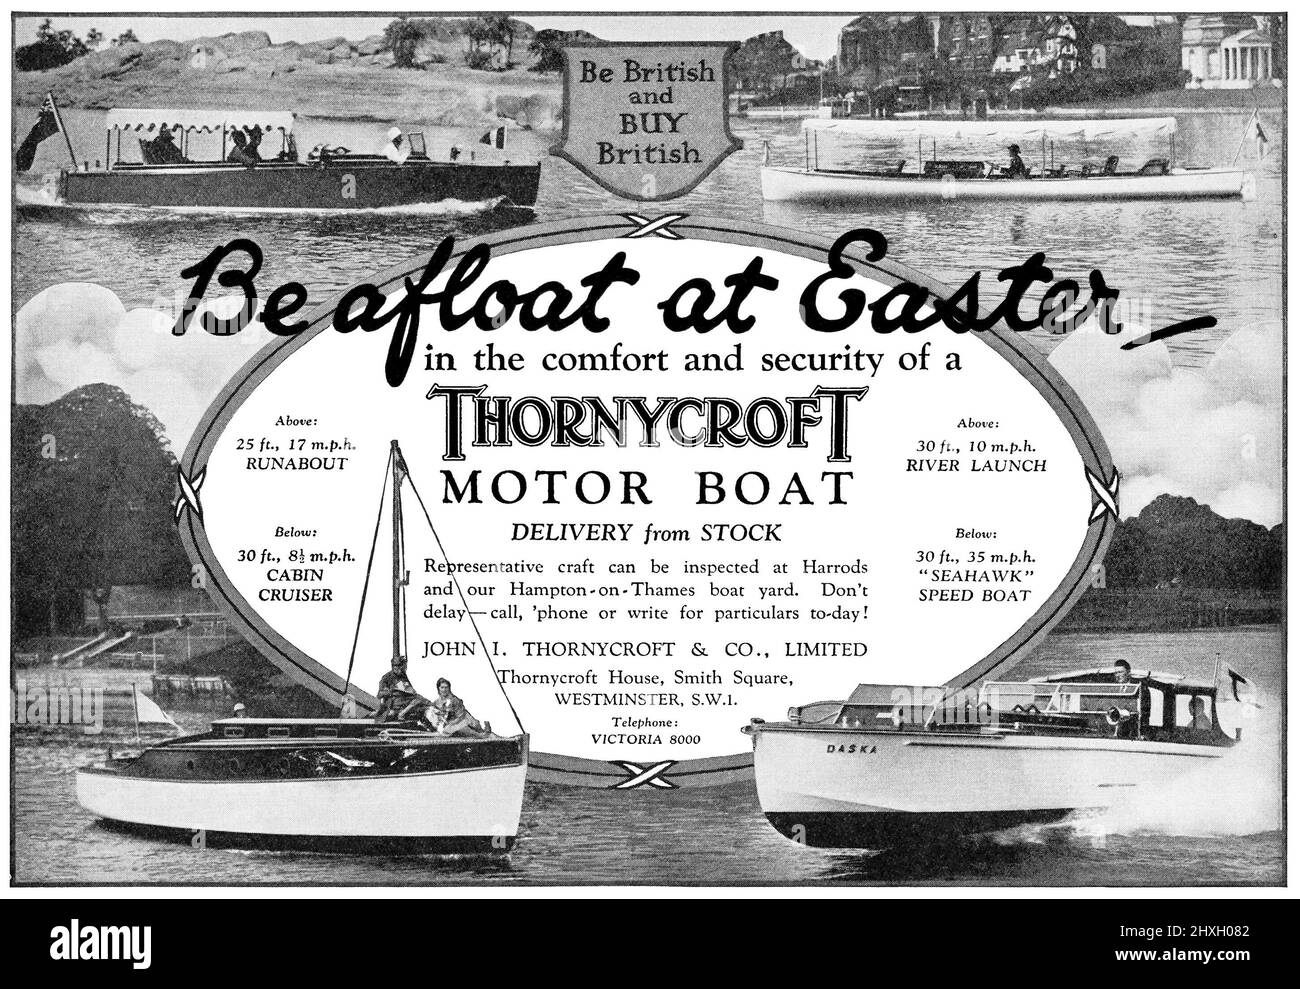 1930 Pubblicità britannica per barche a motore Thornycroft. Foto Stock